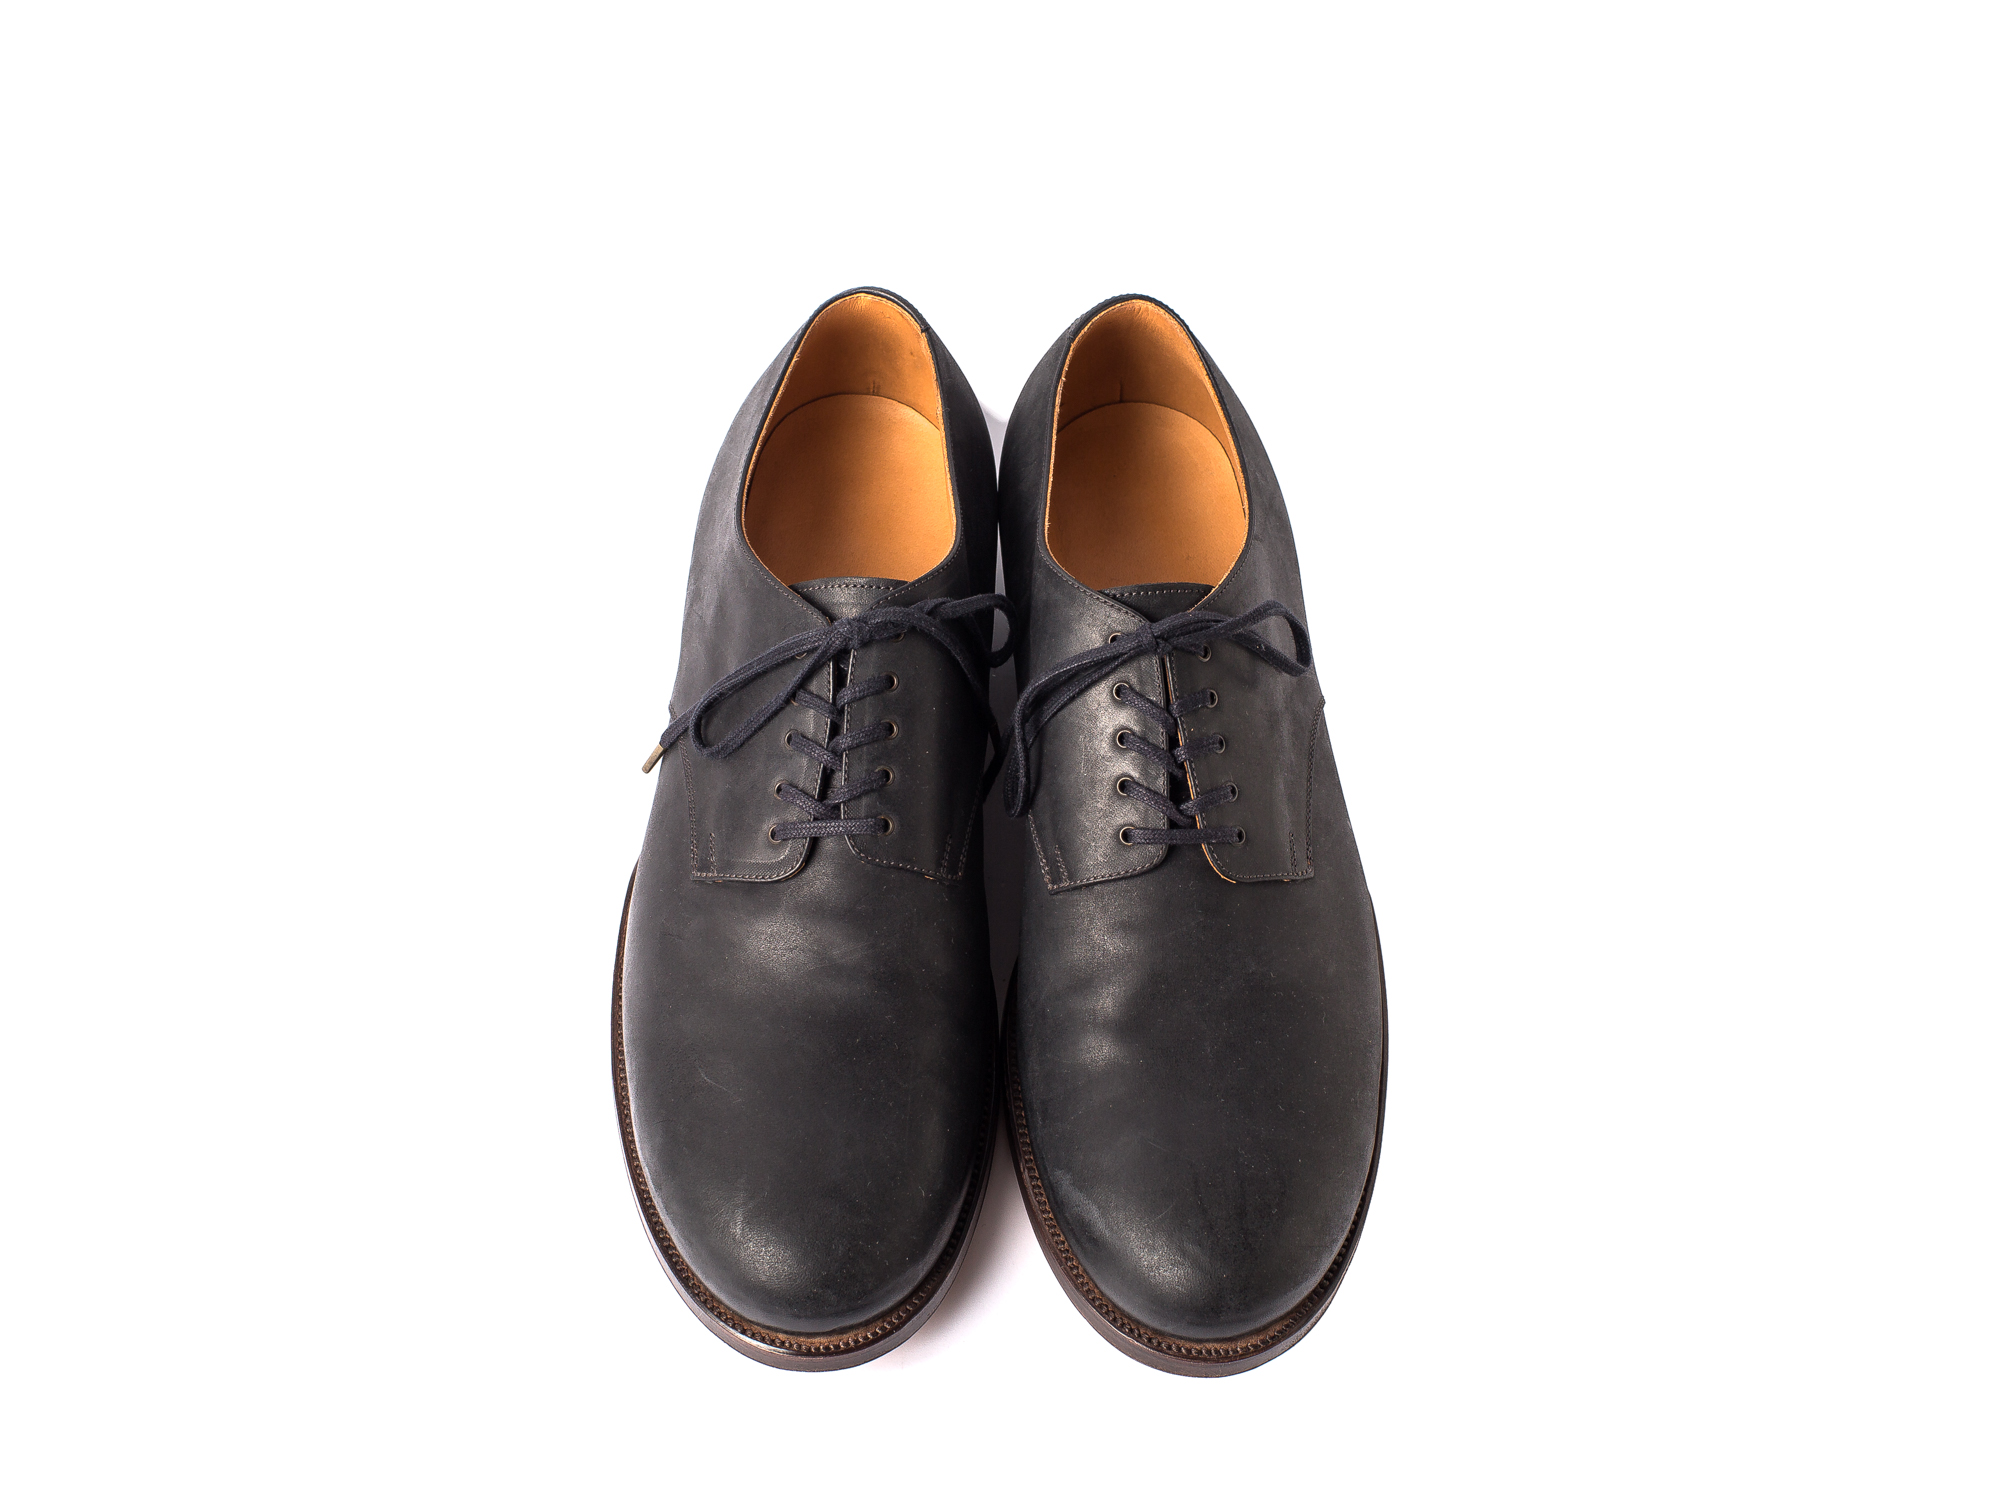 Blucher plain toe - forme leather  shoes